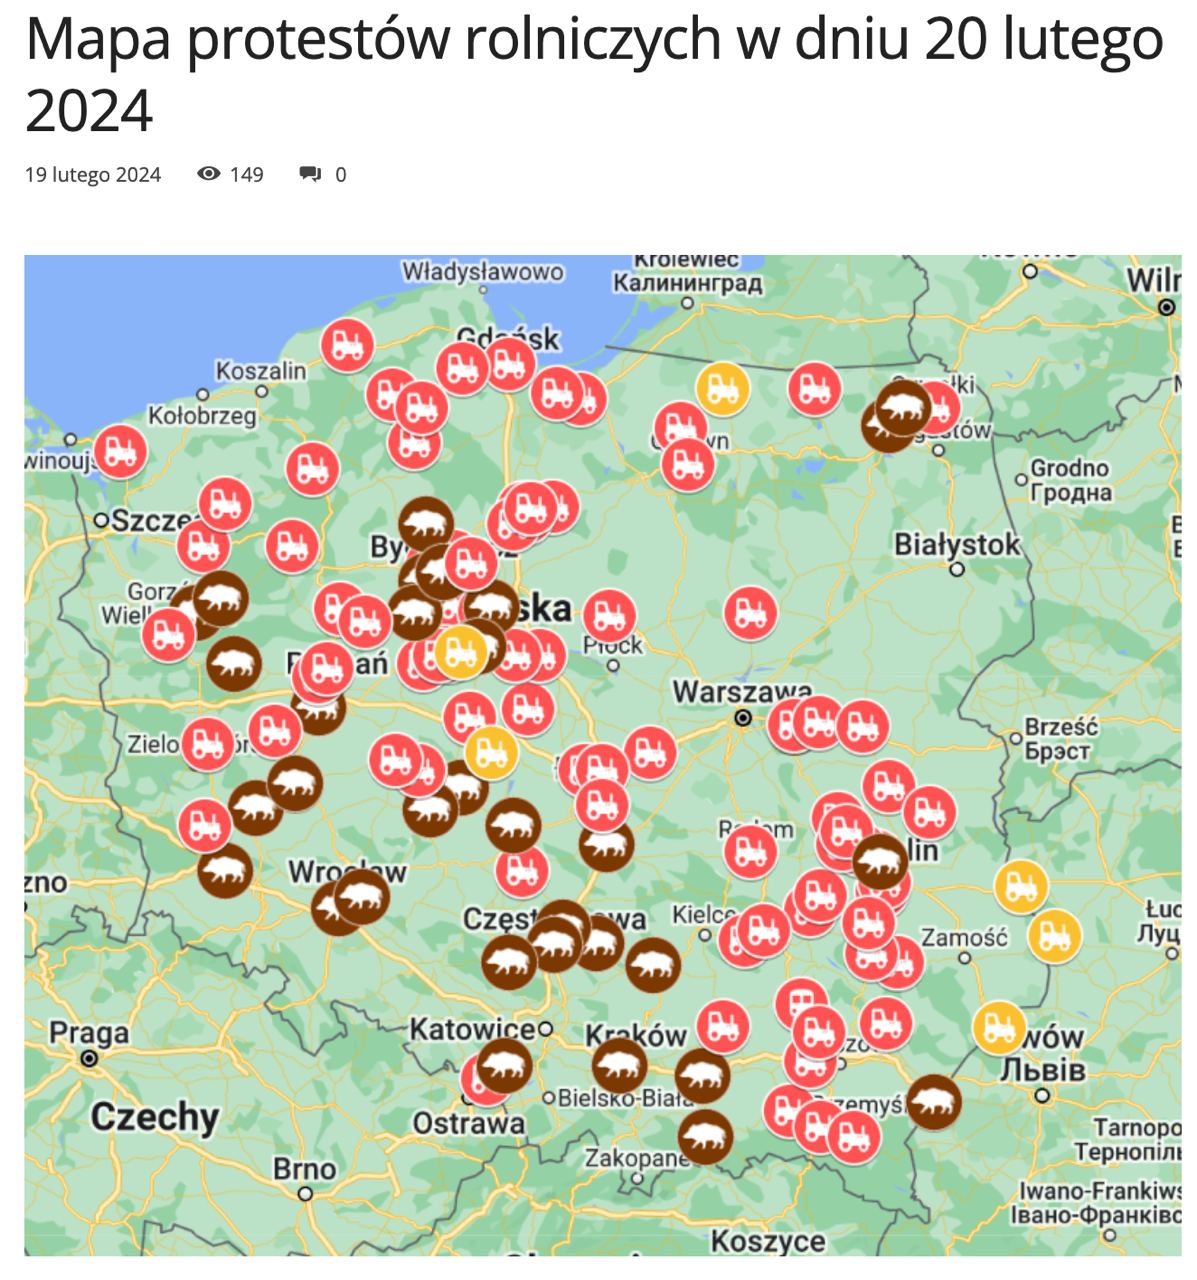 Карта протестов в Польше. Источник - соцсети